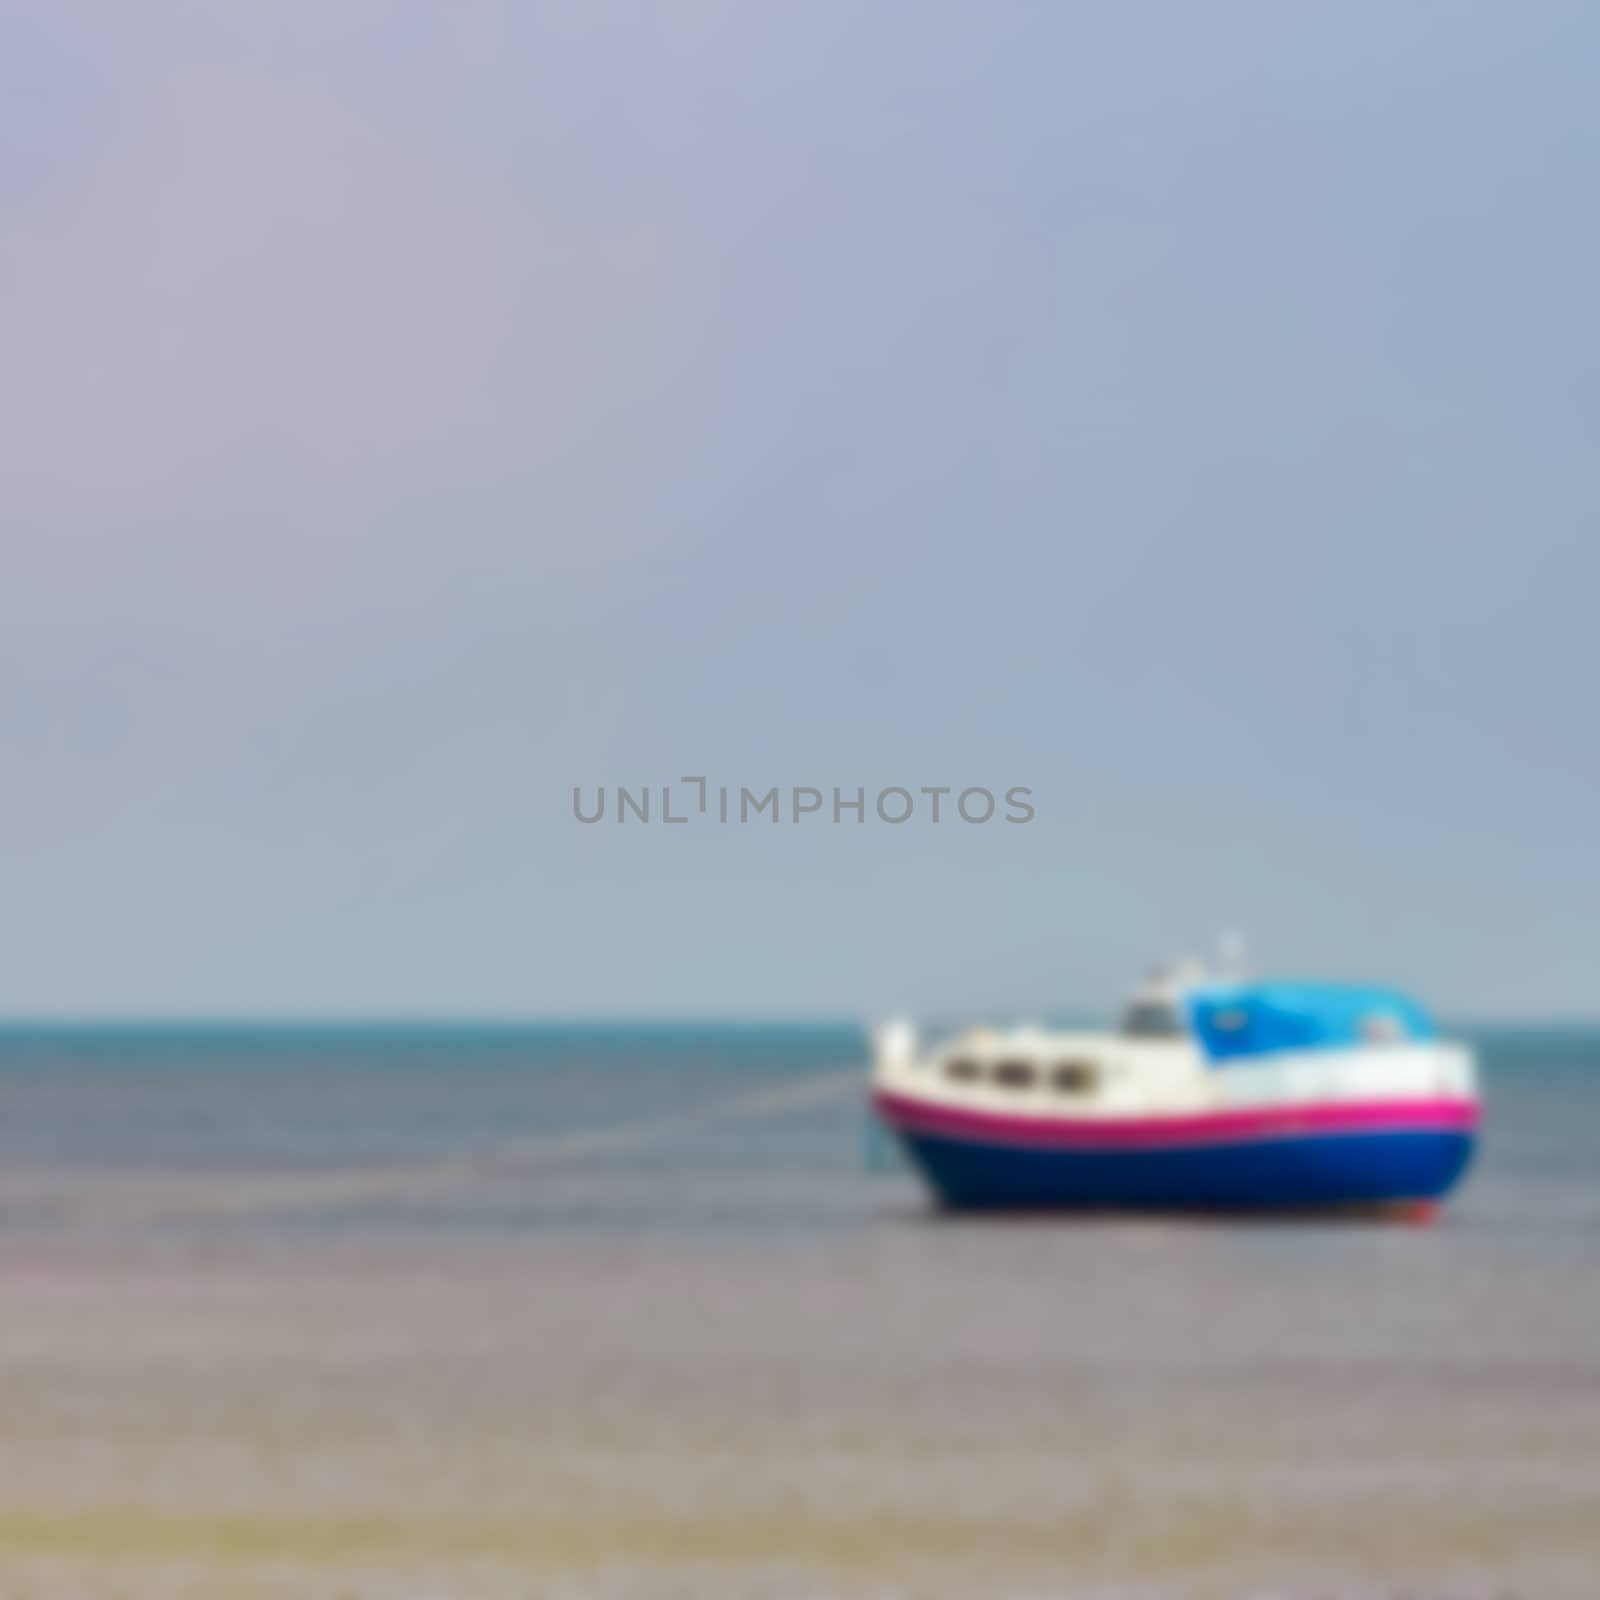 Blue passenger ship - blurred image by sengnsp